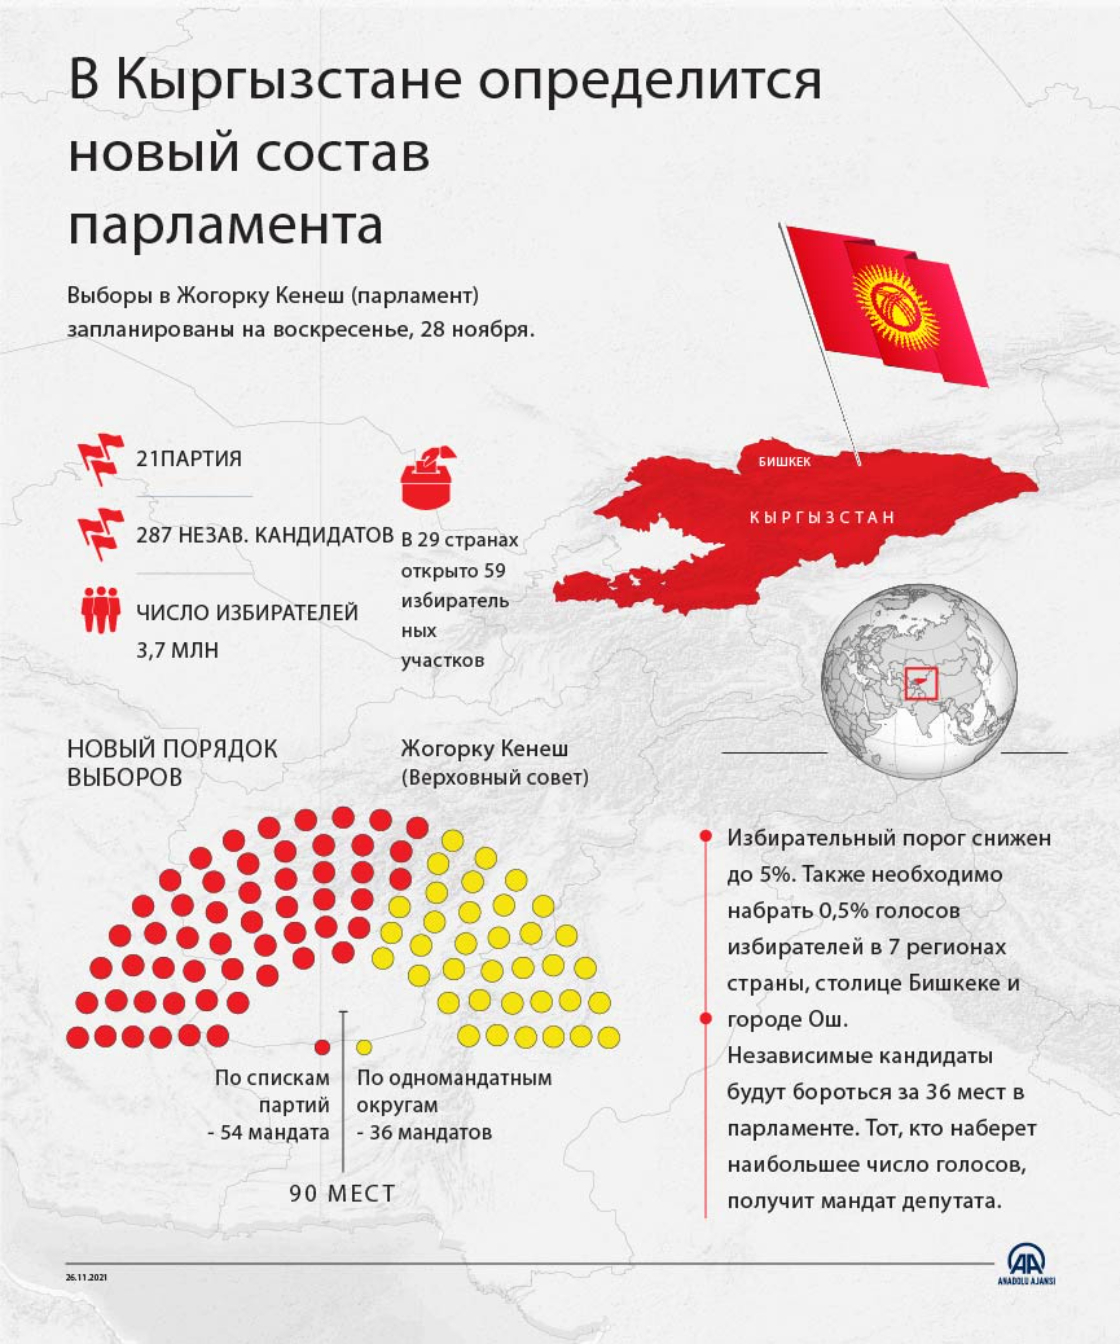 Кыргызстан готовится к парламентским выборам